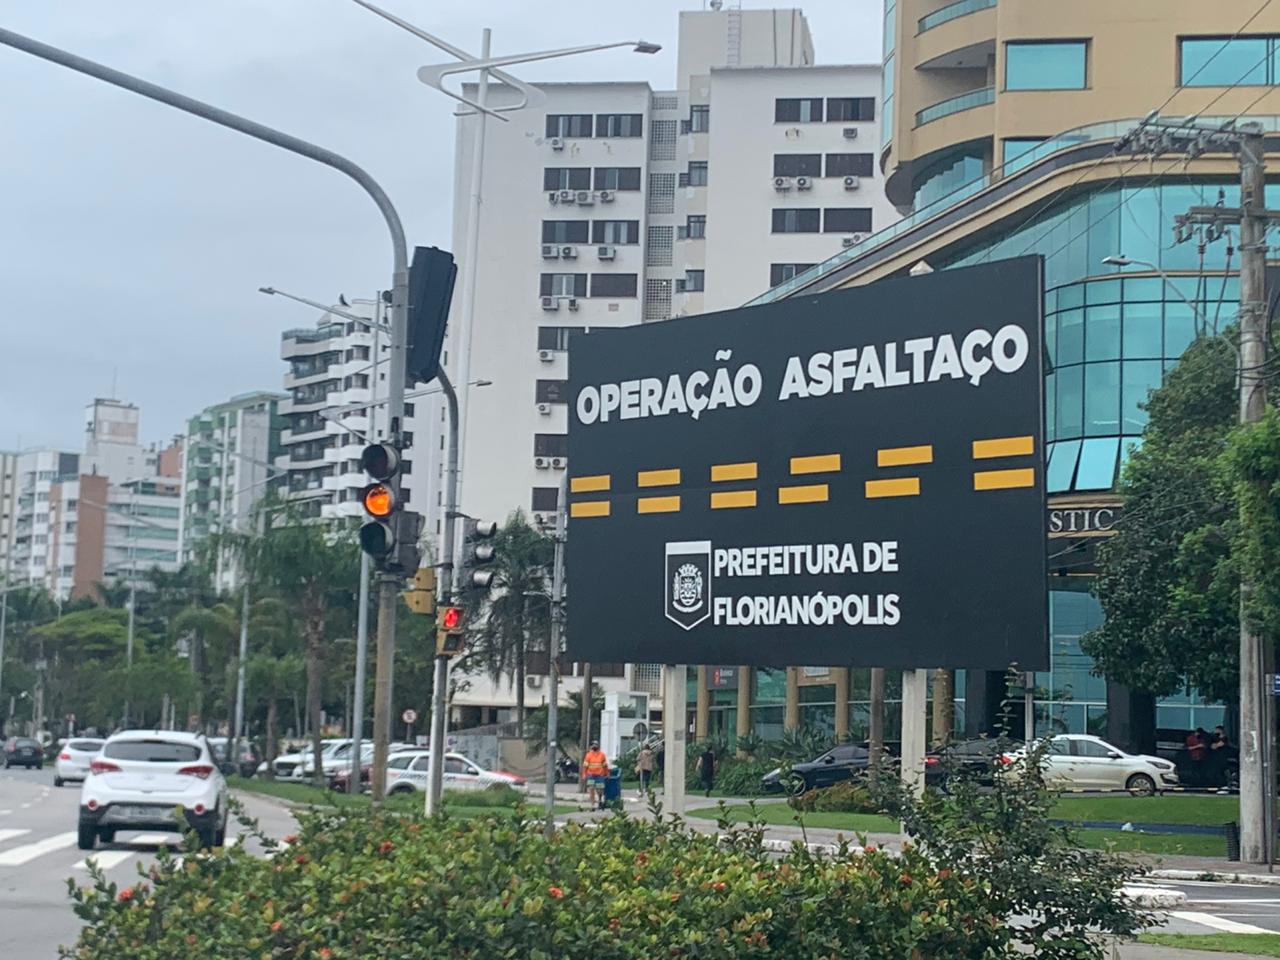 Florianópolis: Governo Gean Loureiro valoriza mais o asfalto do que a vida